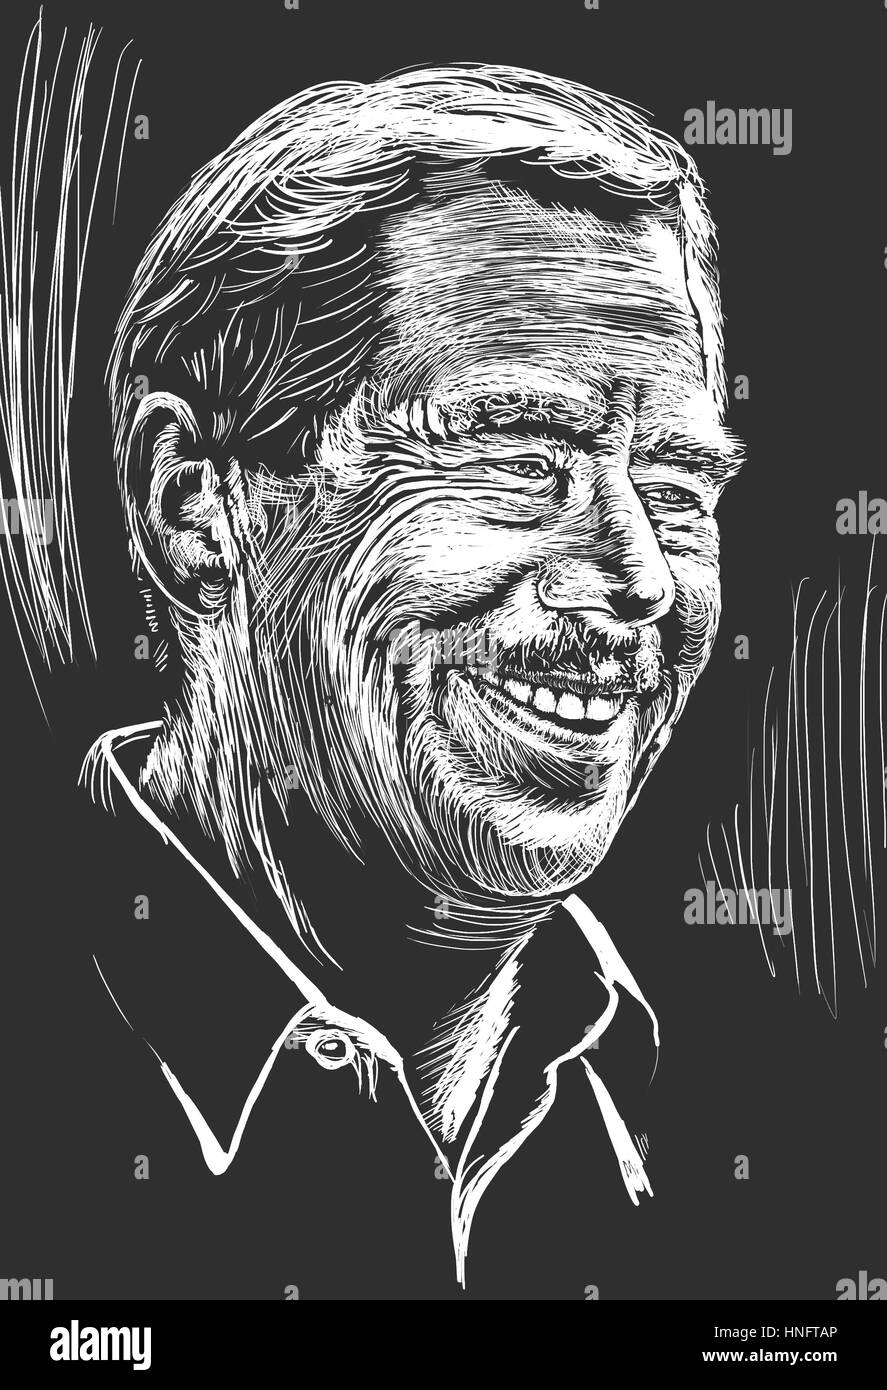 Zeichnung der Tschechische Ex-Präsident Vaclav Havel, Autor von Theaterstücken und Philosoph. Februar 2017. Weiße Gravur auf dunklen grauen Hintergrund. Stockfoto